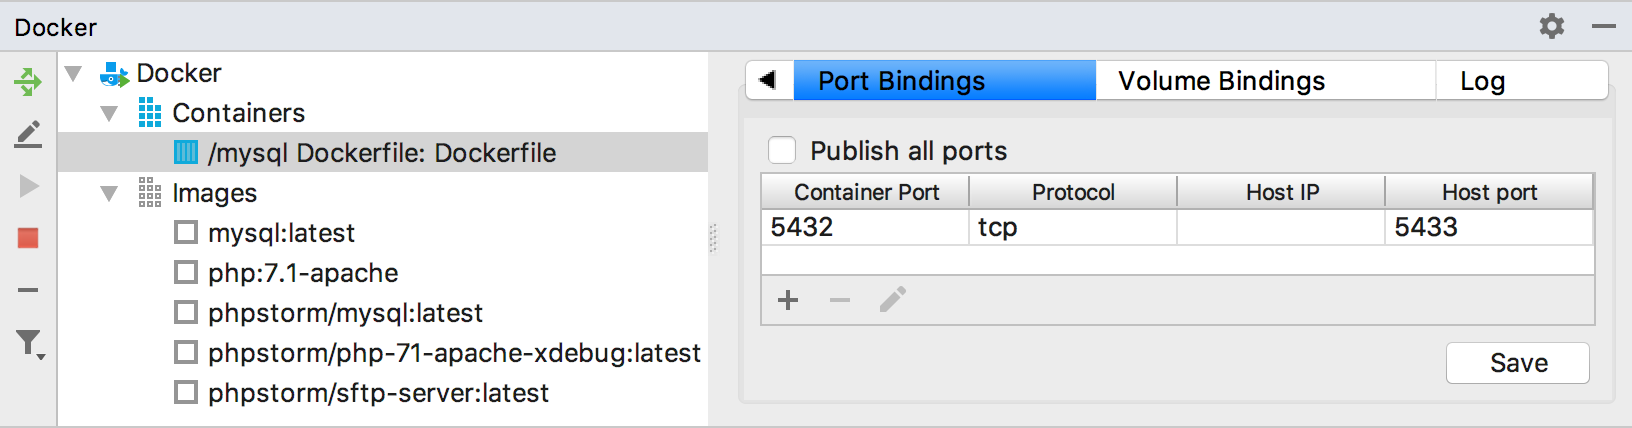 The Port Bindings tab